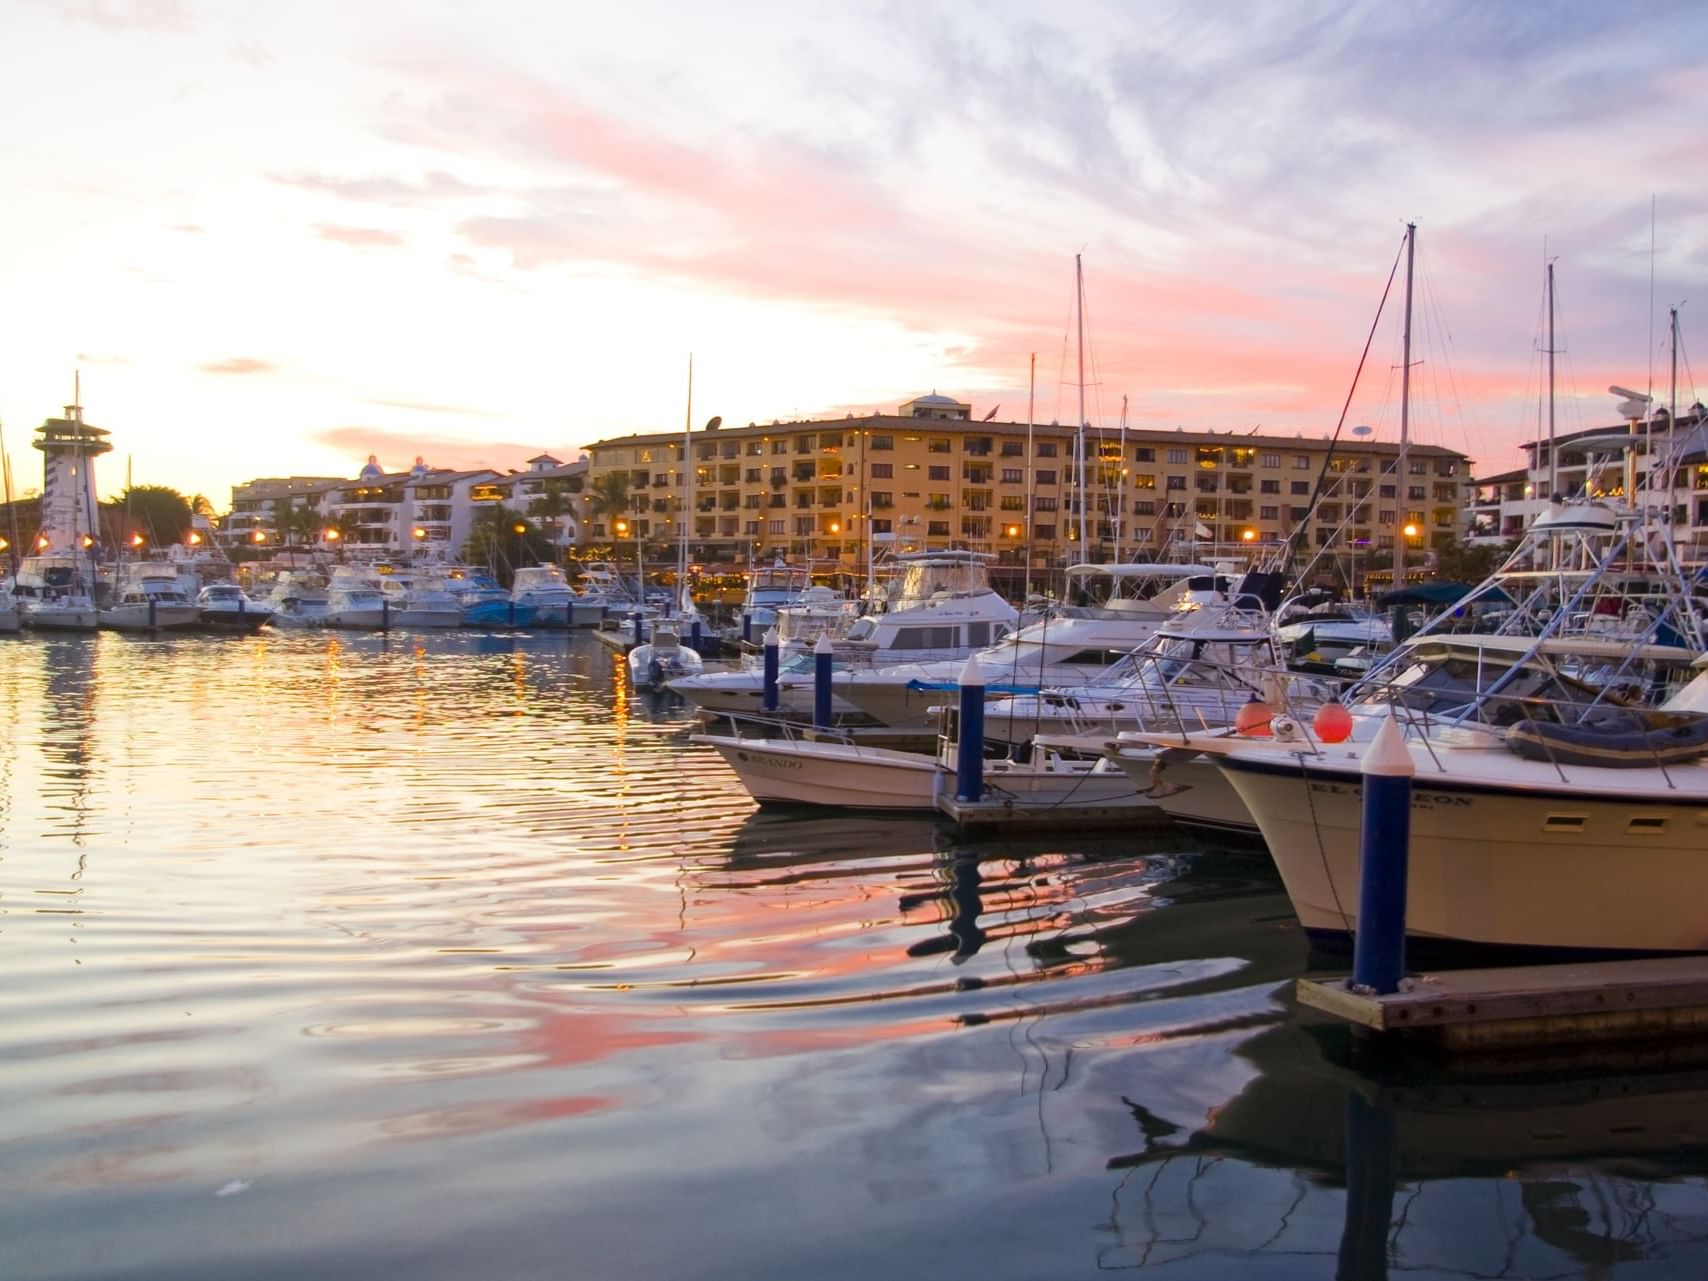 Sunset over Marina Vallarta with boats docked near Plaza Pelicanos Grand Beach Resort